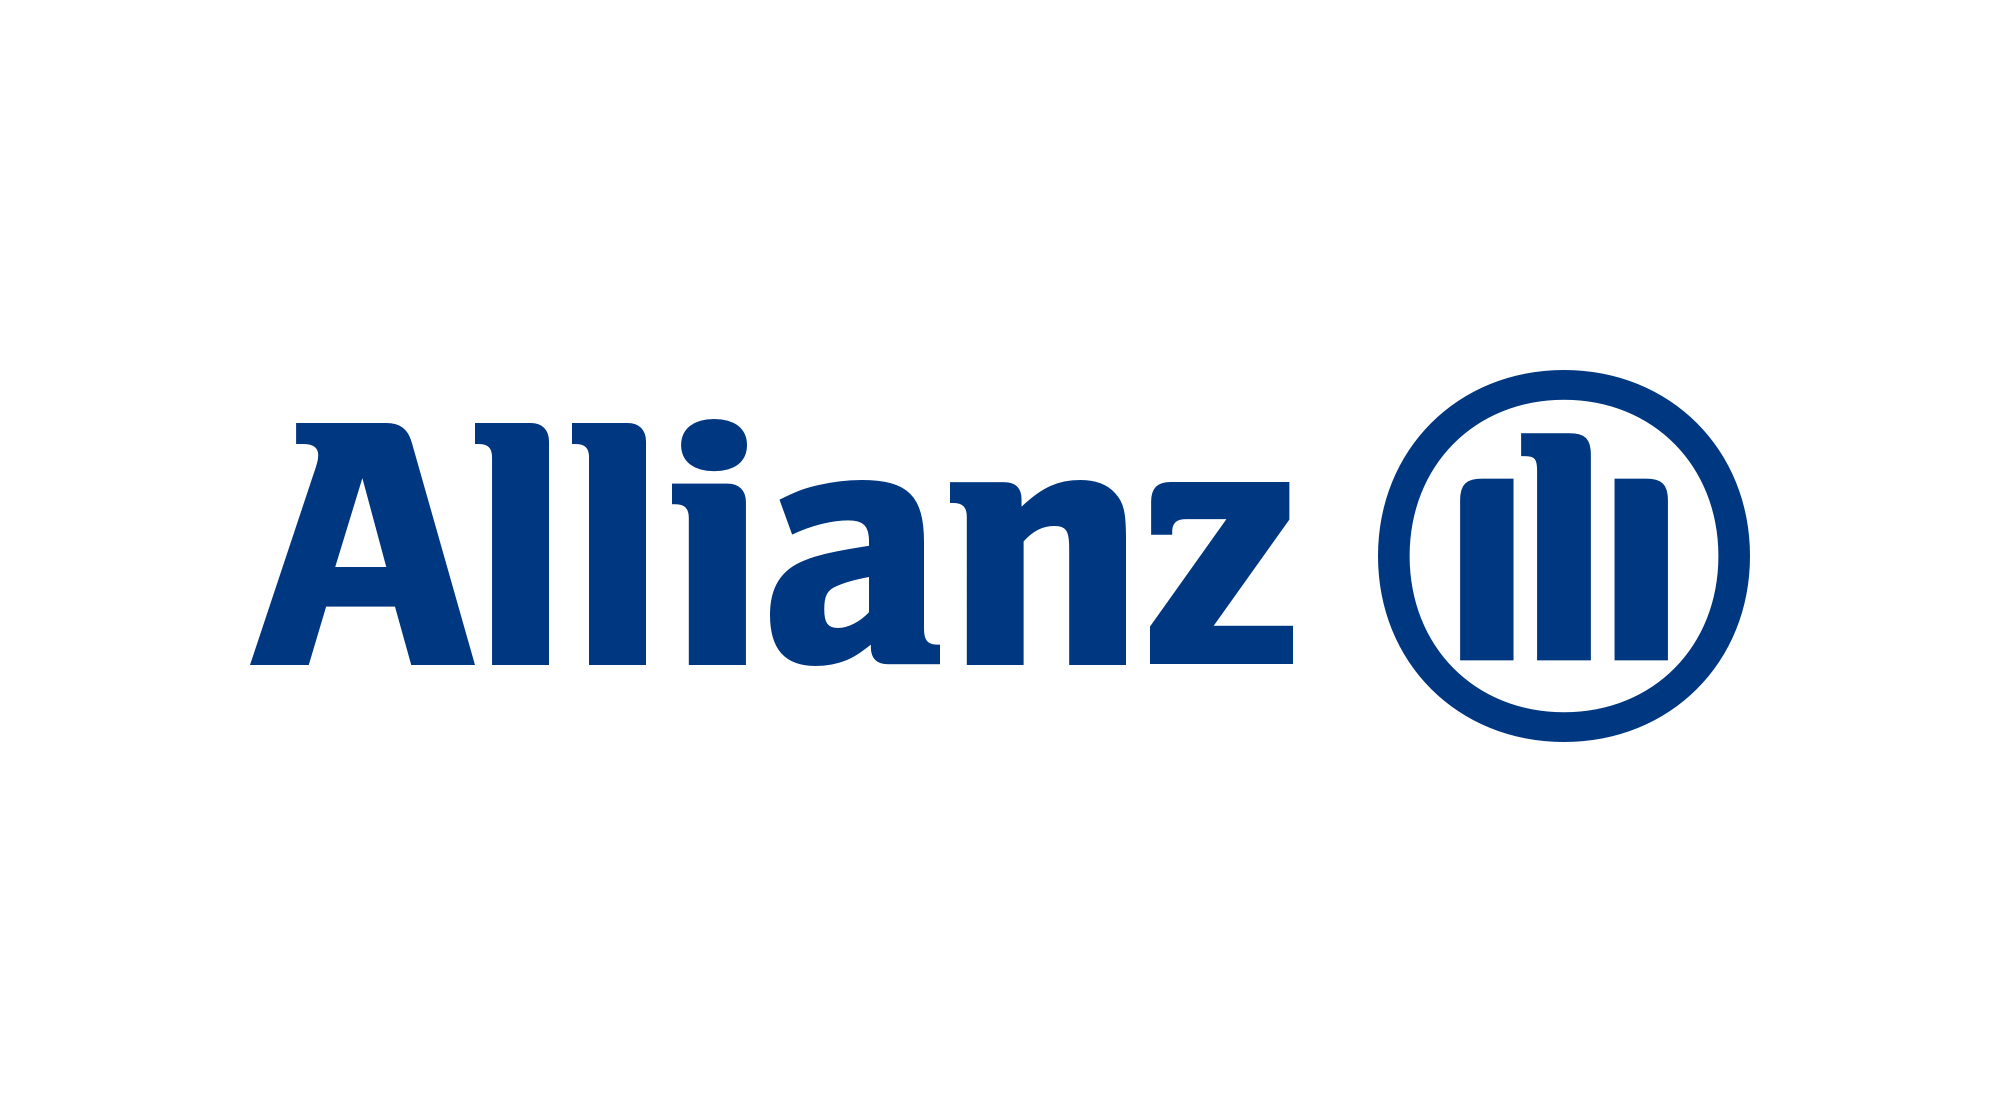 Allianz logo on white background